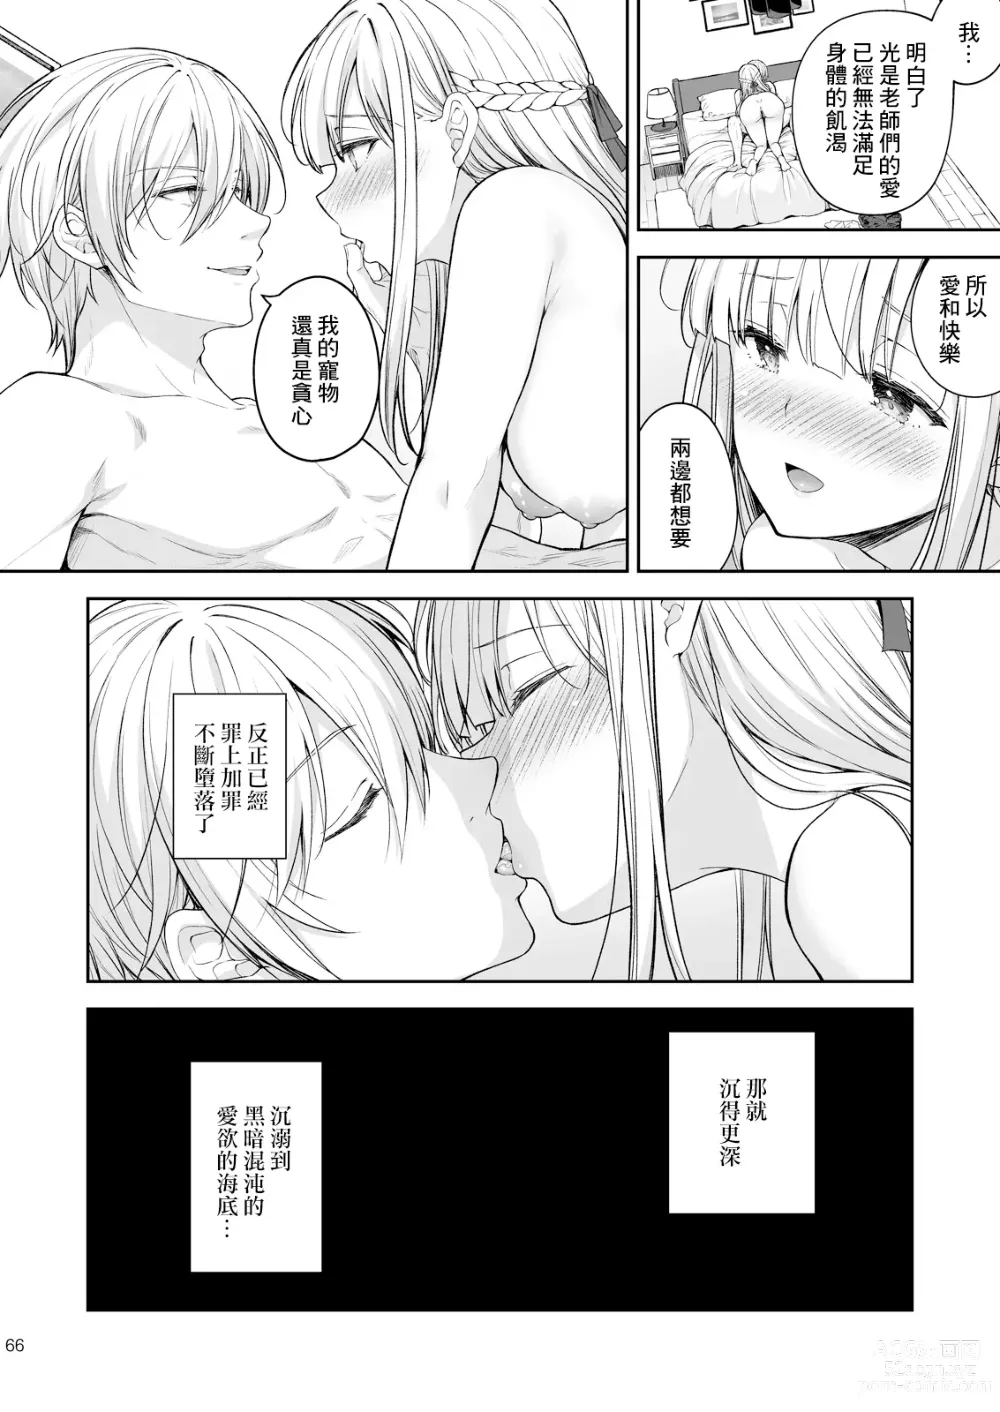 Page 67 of doujinshi 淫溺の令嬢8〜最終巻〜